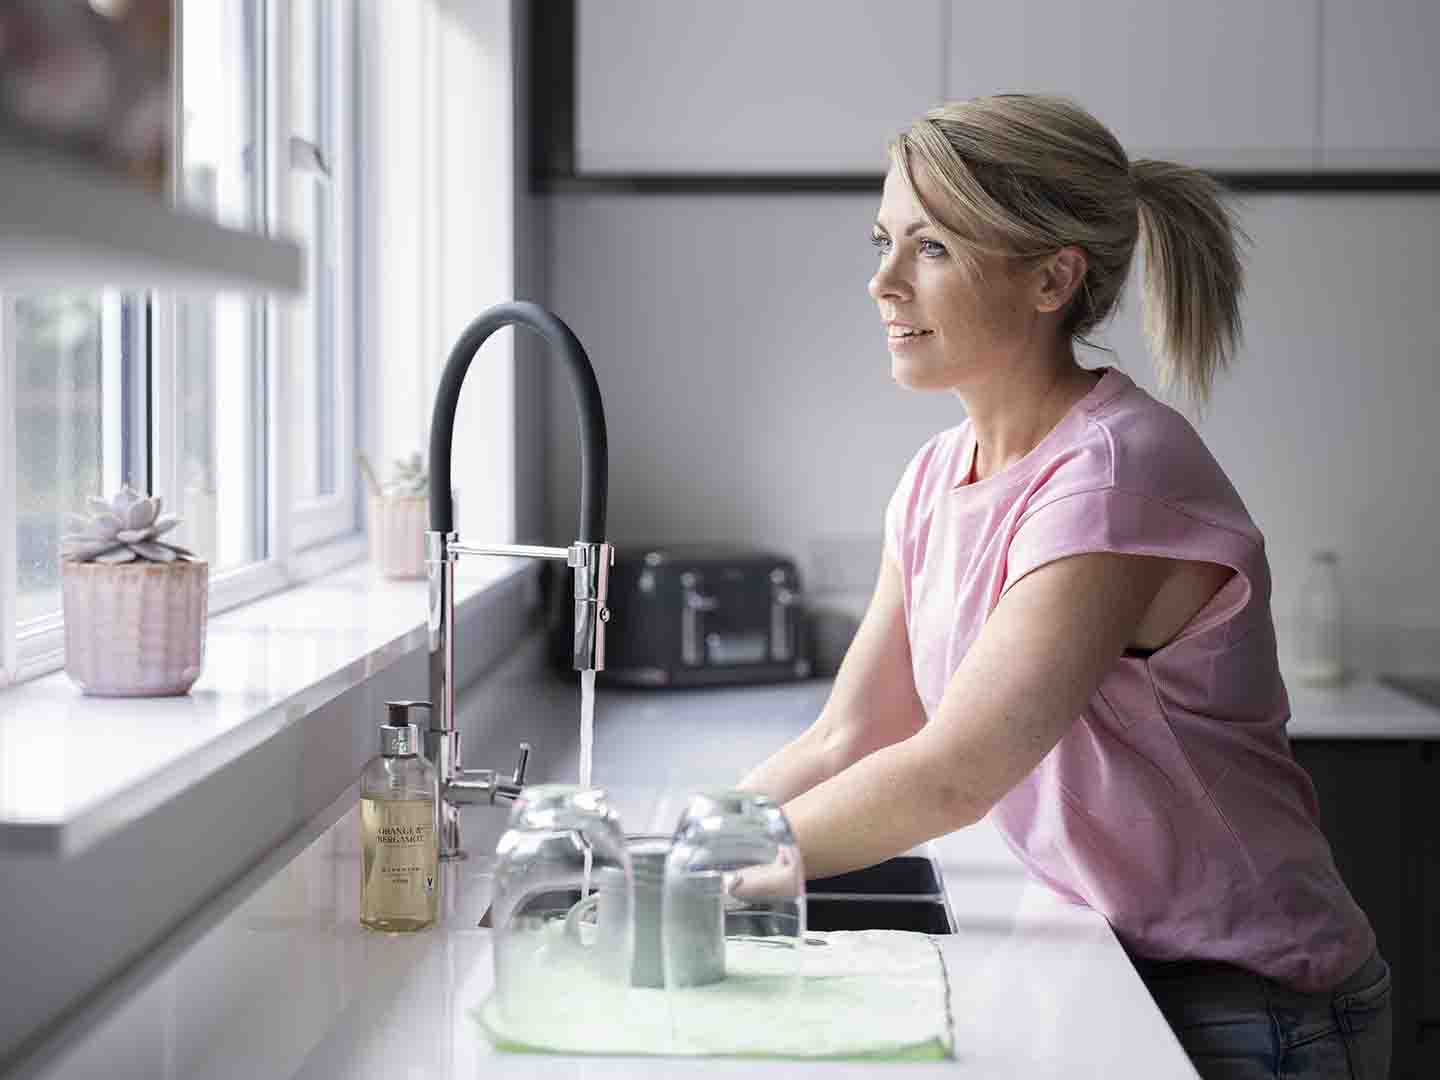 Kvinne vasker hender på kjøkken